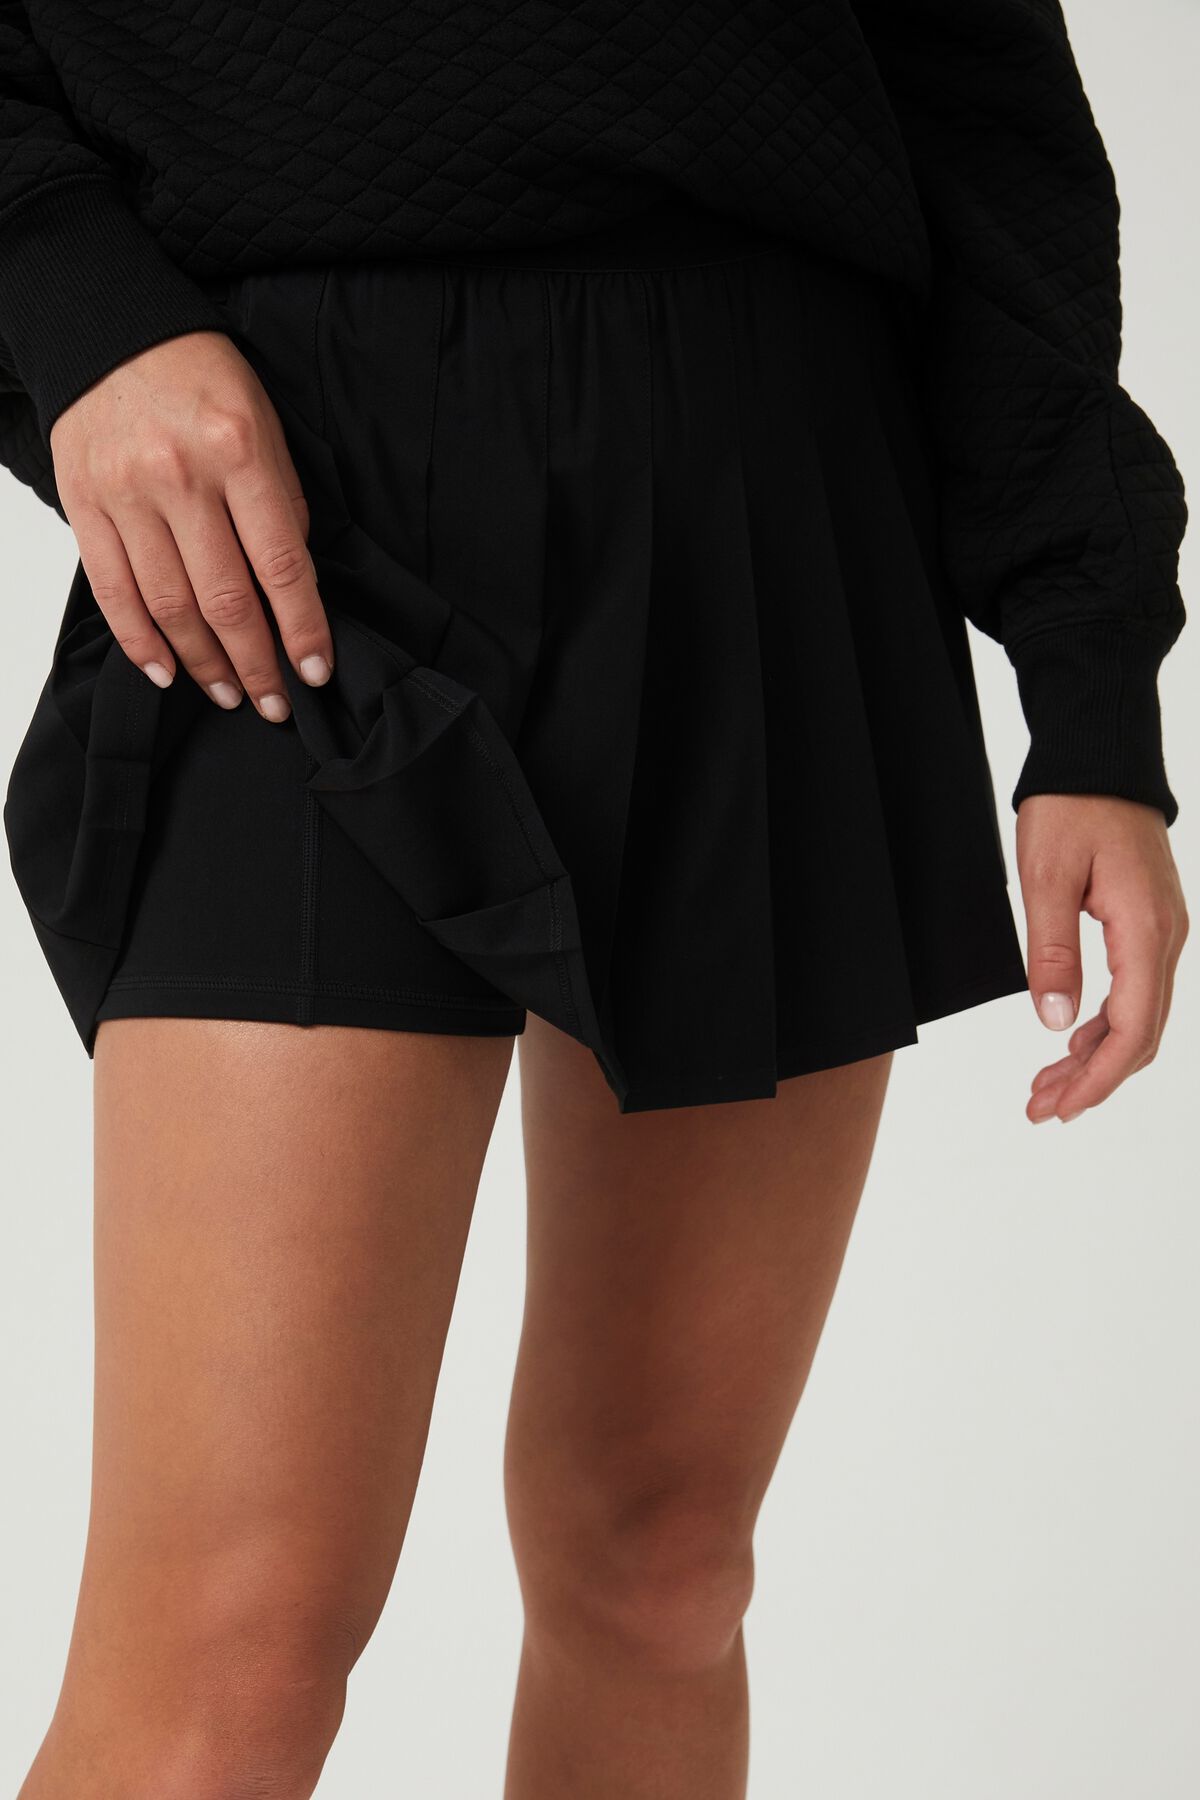 Match Point Tennis Skirt | Cotton On (ANZ)